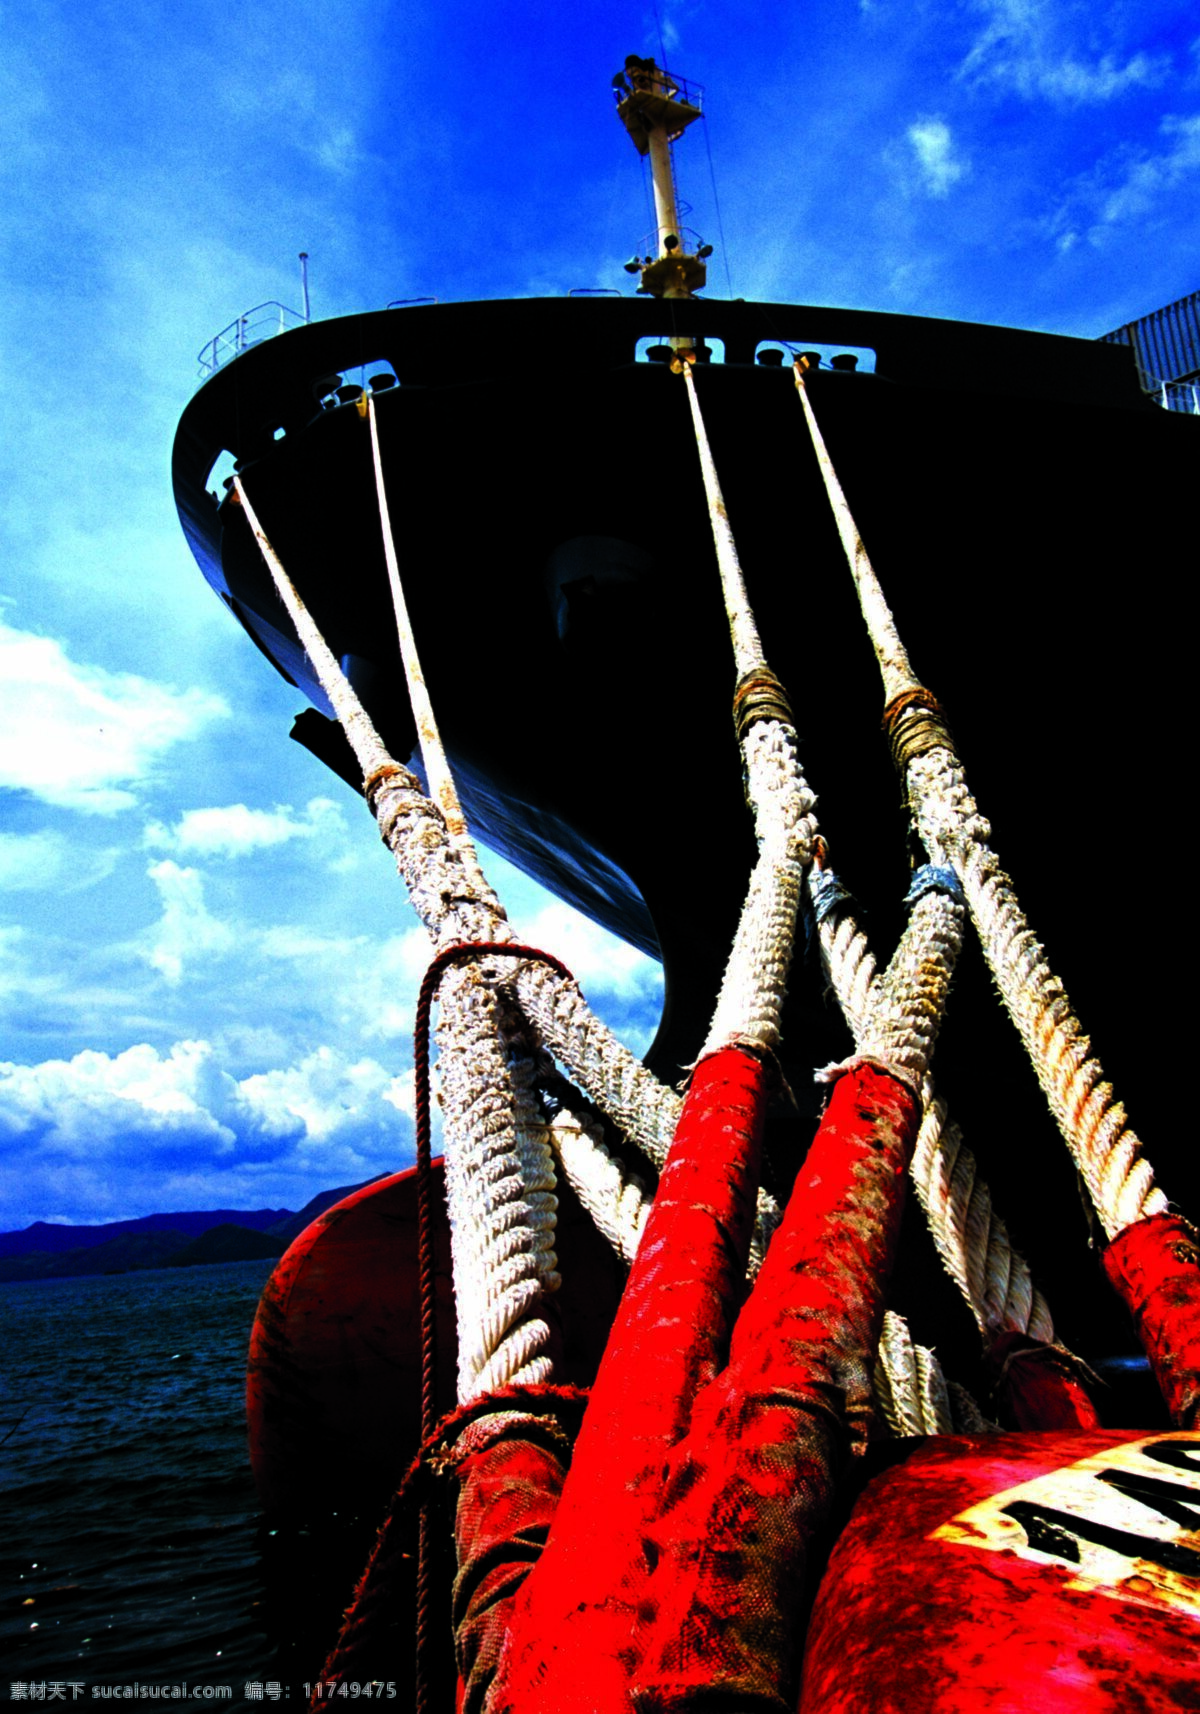 码头一景 码头 海港 轮船 缆绳 船头 蓝天 海洋 现代科技 交通工具 摄影图库